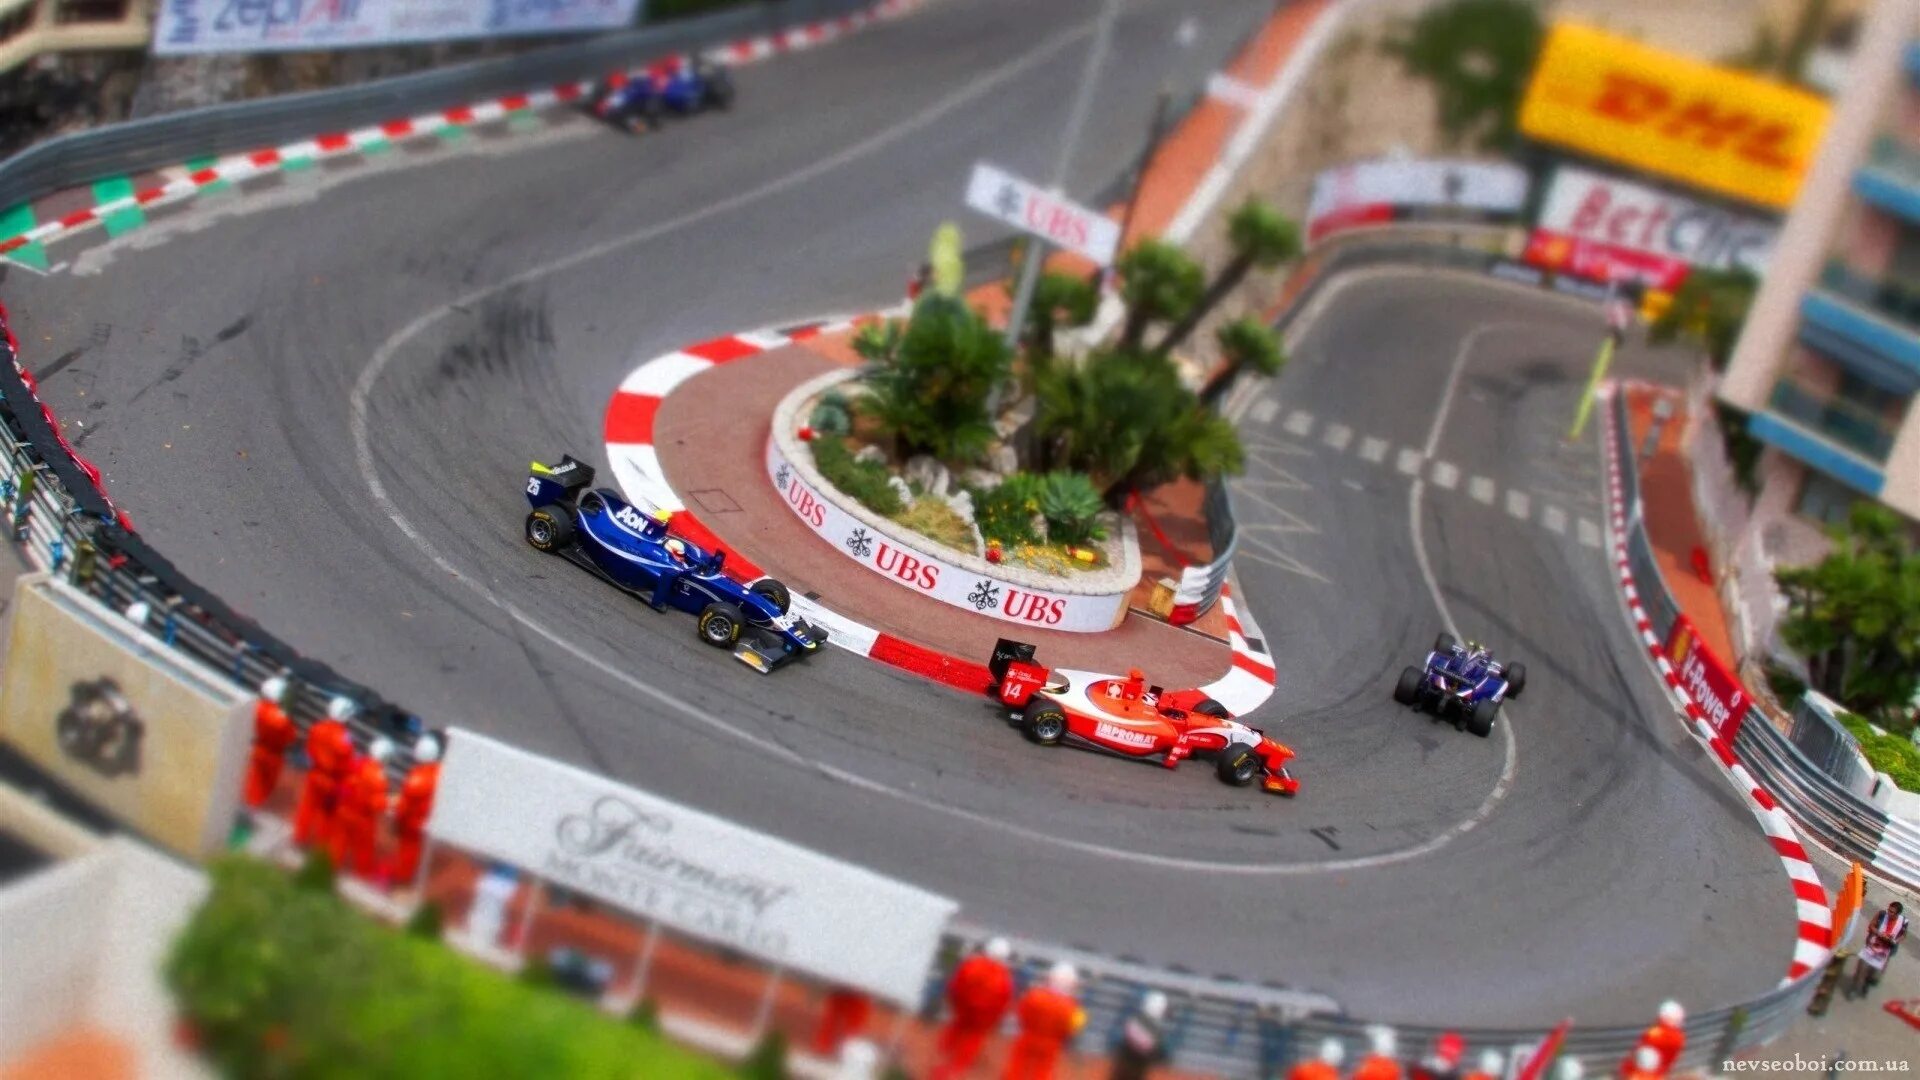 Monaco f1 circuit. F1 Monaco 16 поворот. Monaco f1 track. Монако трасса ф1 питлейн.